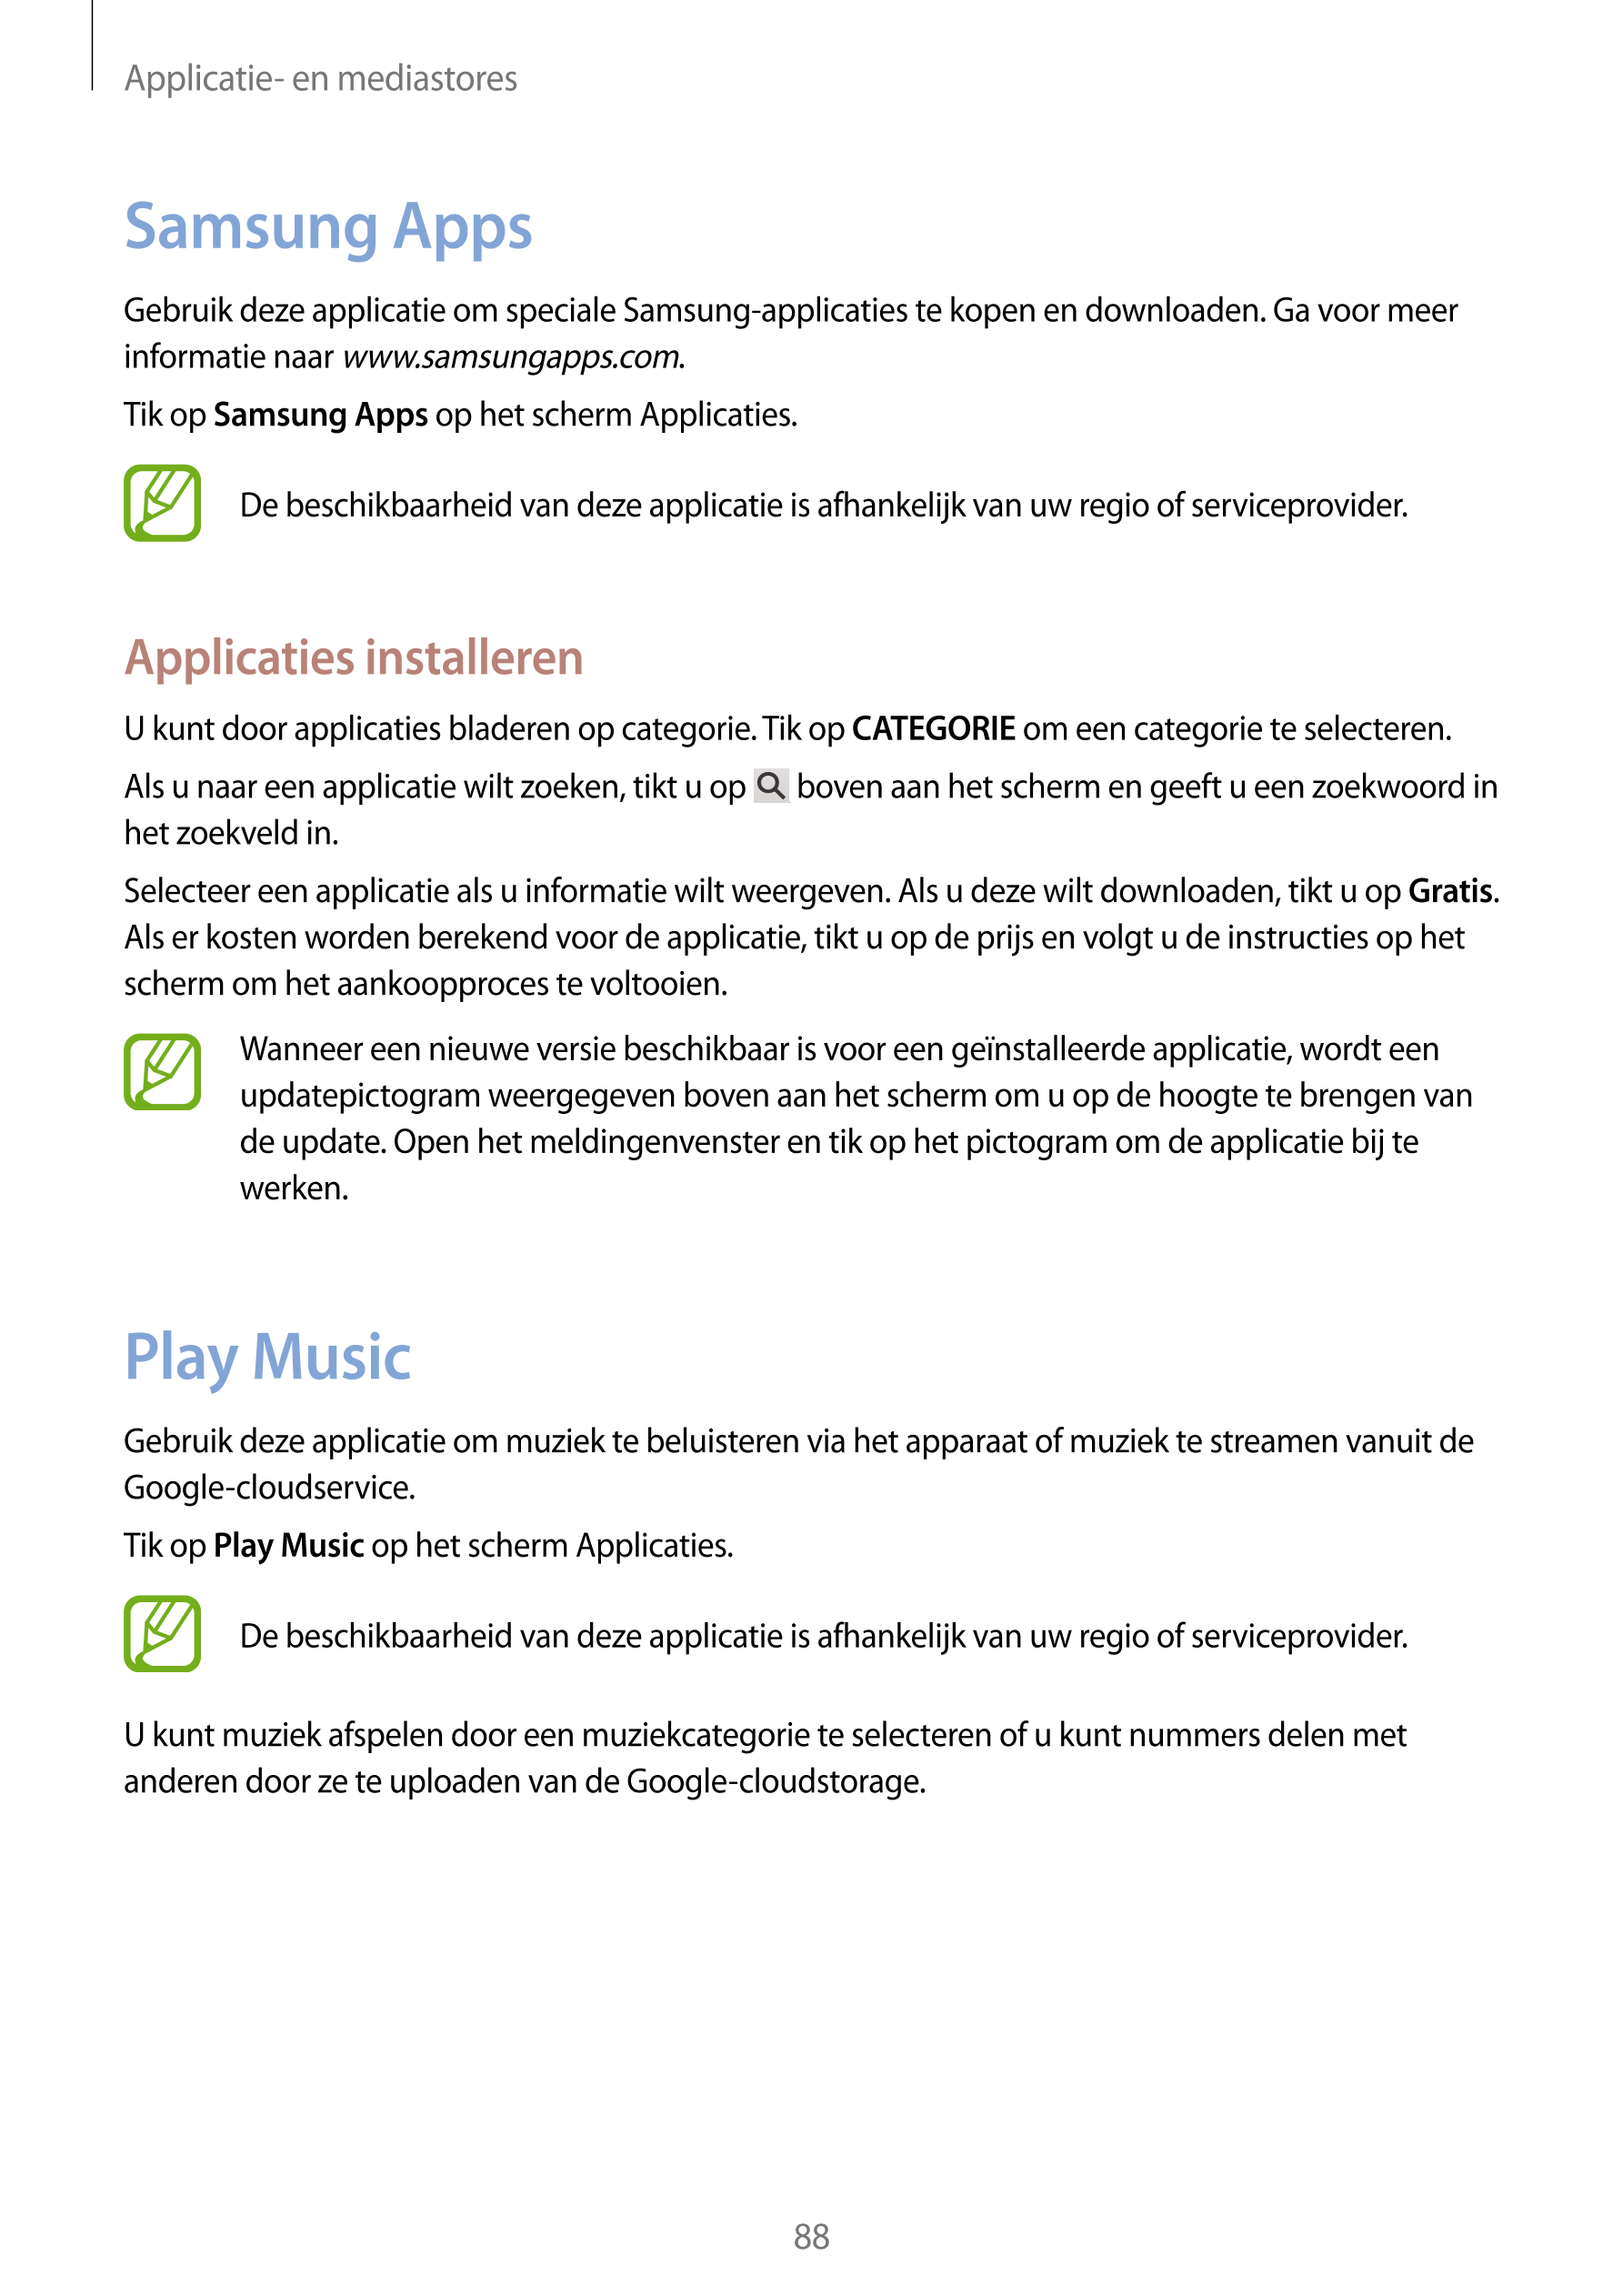 Applicatie- en mediastores
Samsung Apps
Gebruik deze applicatie om speciale Samsung-applicaties te kopen en downloaden. Ga voor 